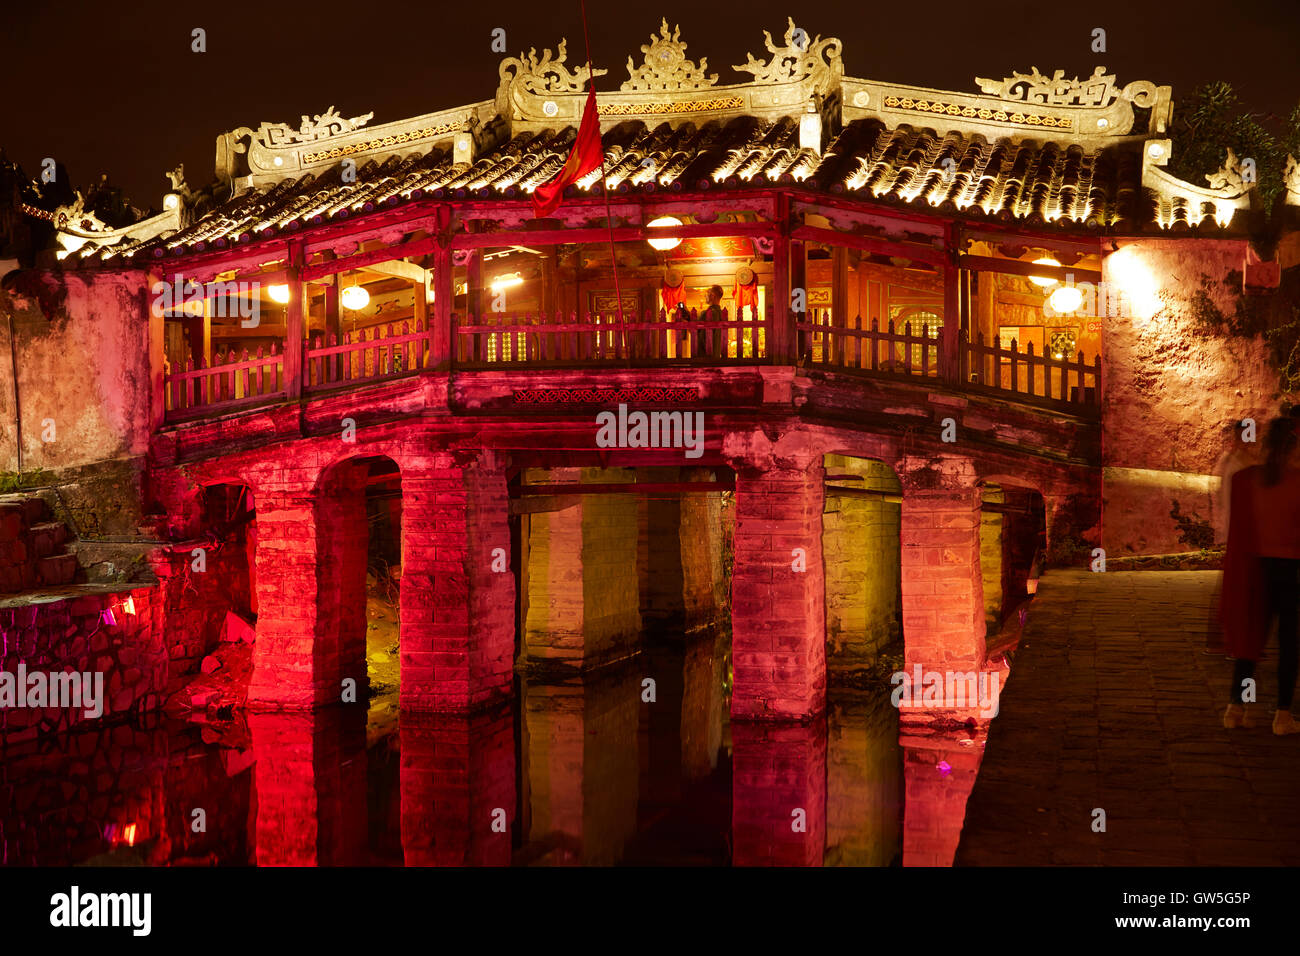 Pont couvert japonais historique dans la nuit (5e-6e siècle), Hoi An (Site du patrimoine mondial de l'UNESCO), Vietnam Banque D'Images